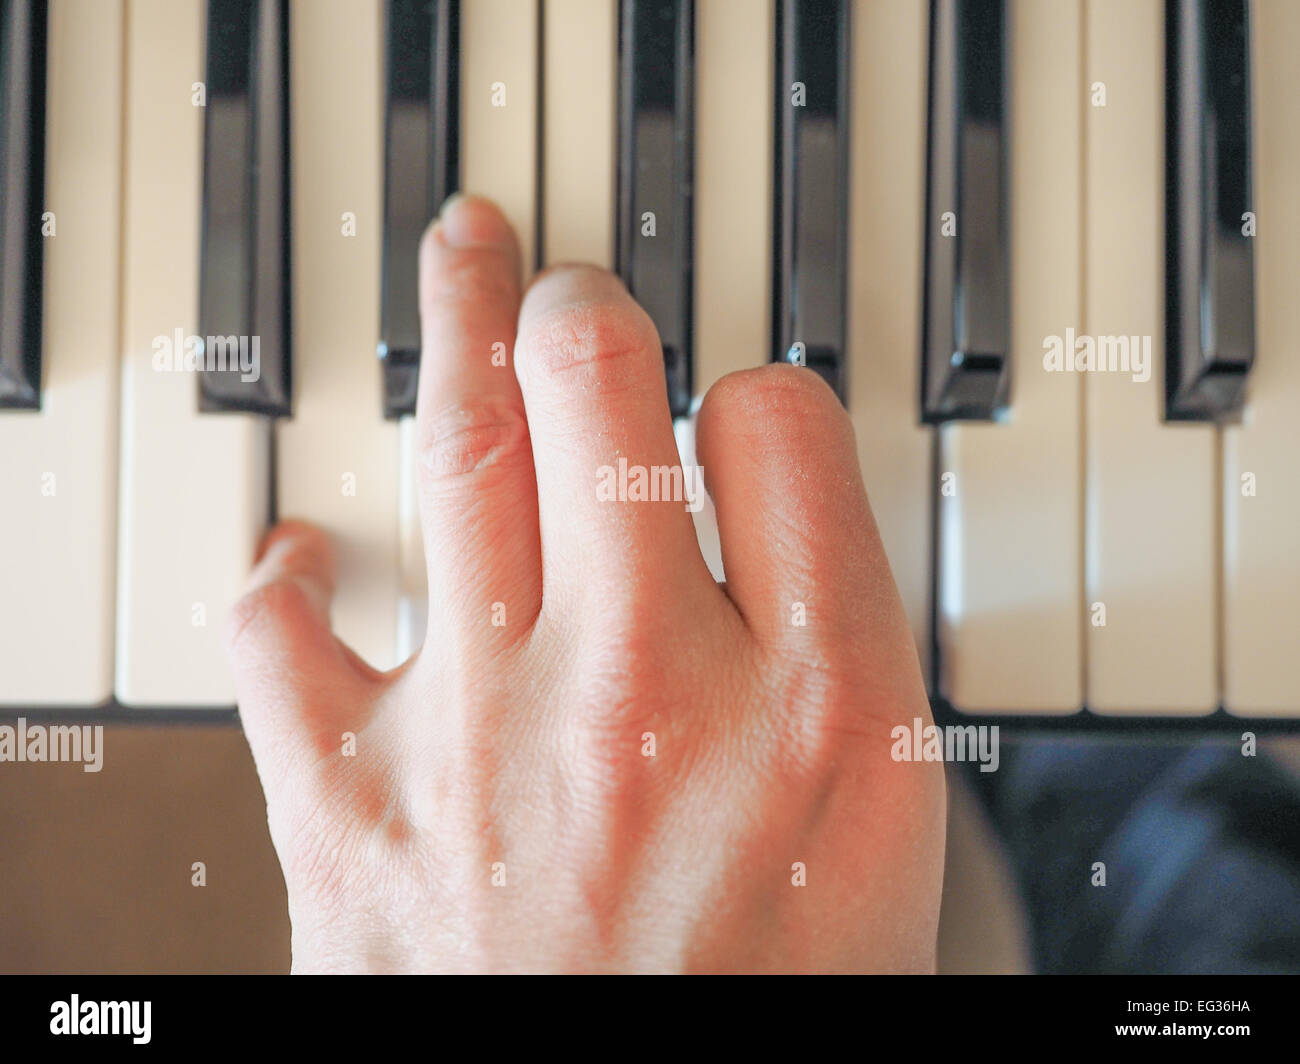 Dettaglio della mano giocando sulla tastiera musicale Foto Stock